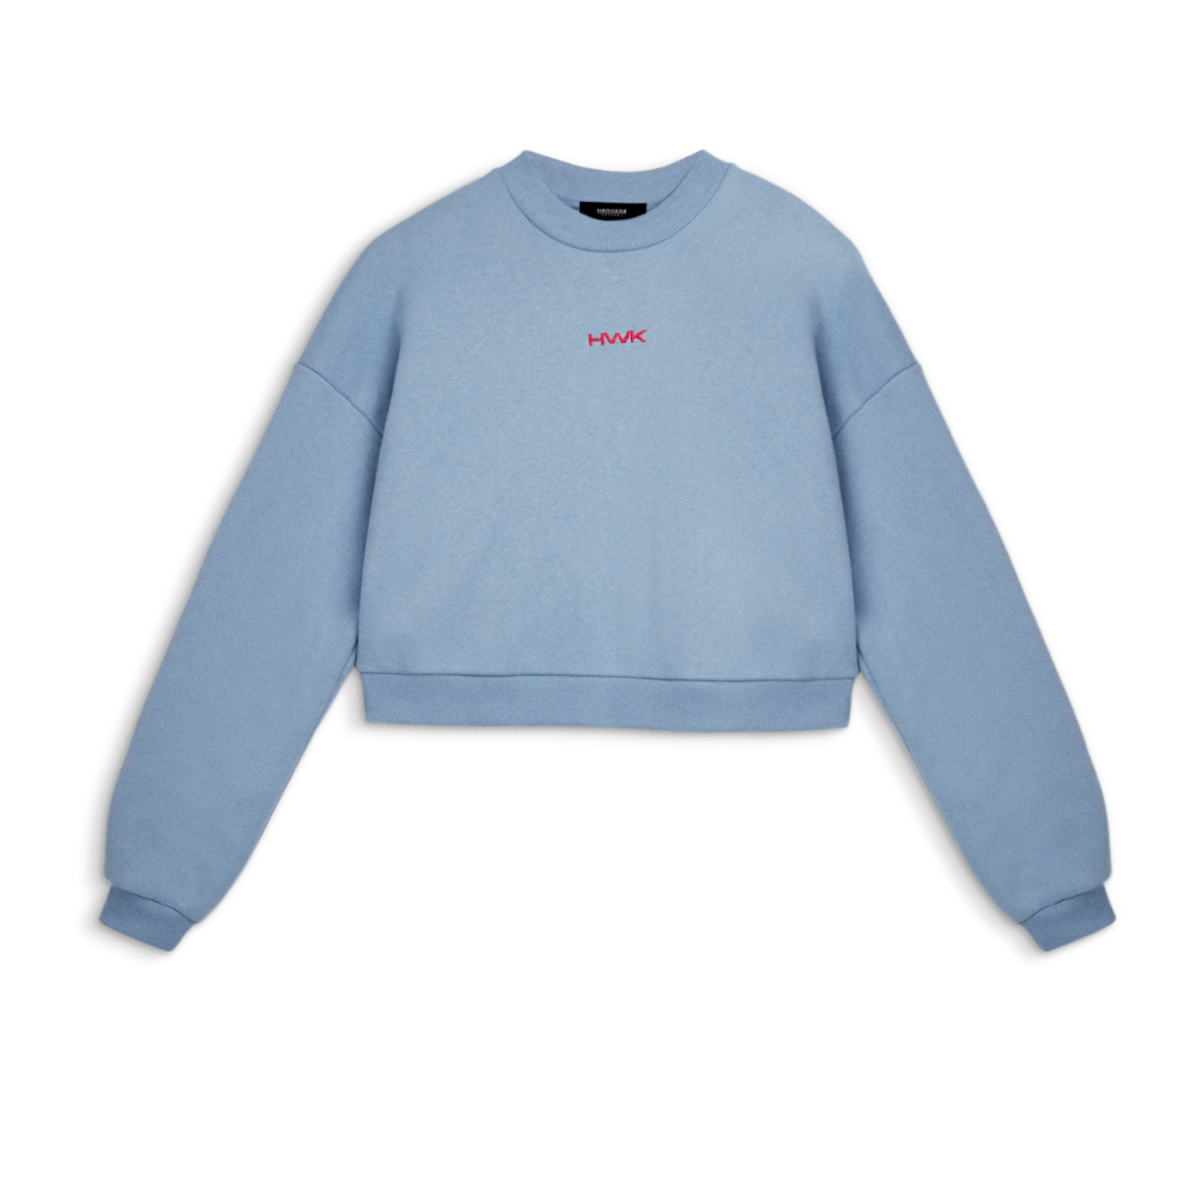 Mex Crop Sweatshirt Blue (s)